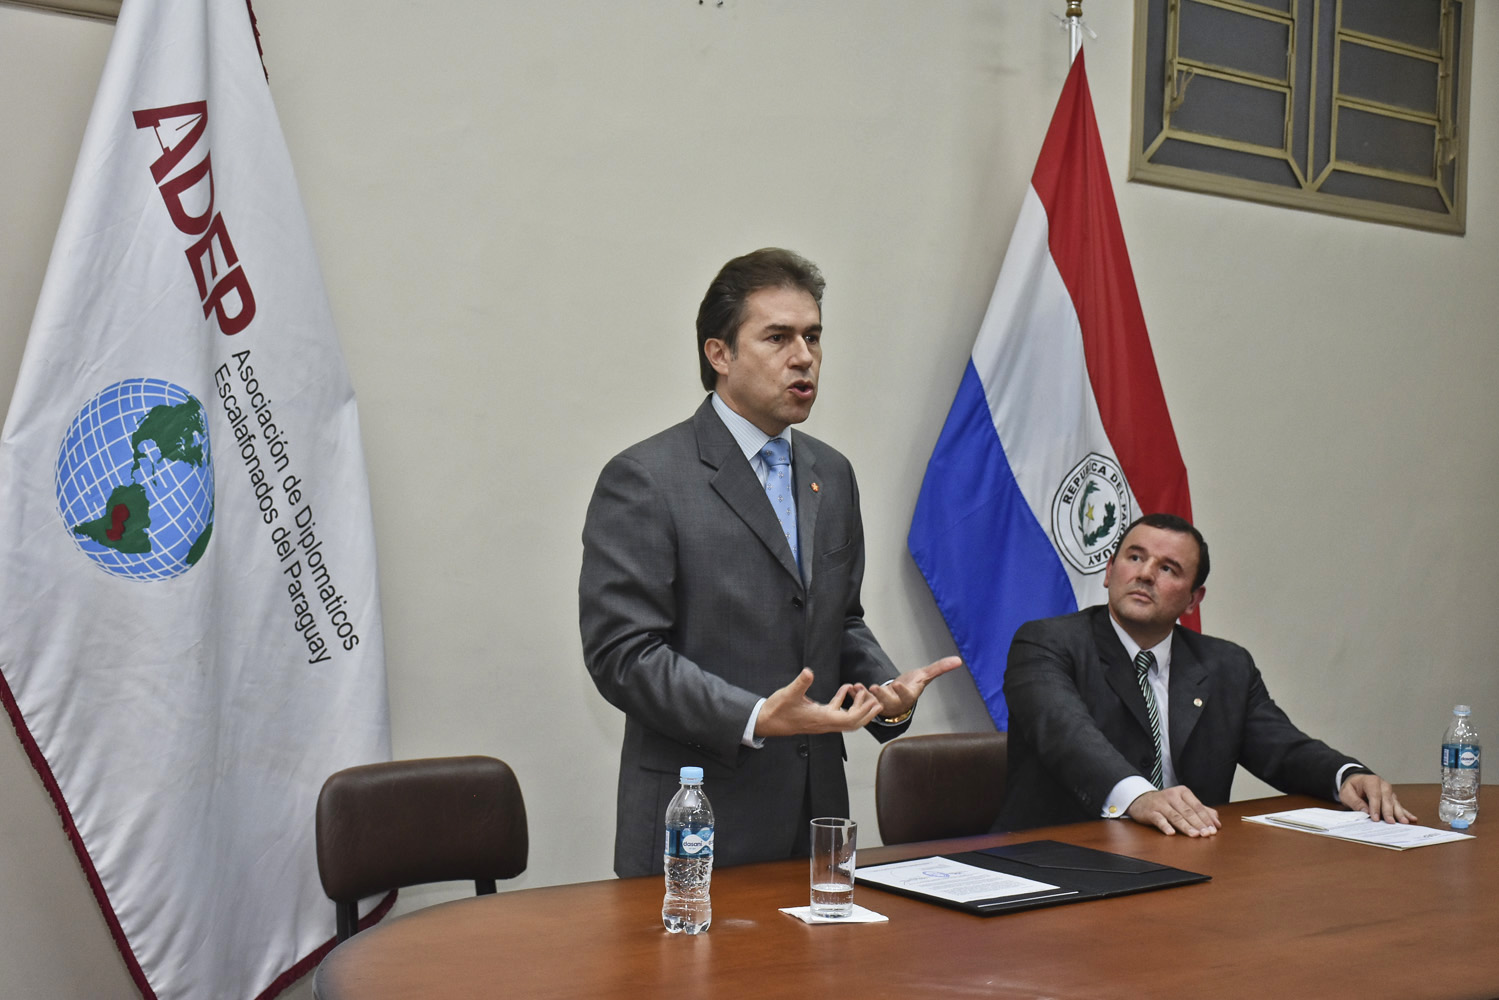 Paraguay hoy es un respetado referente internacional por la calidad de su política exterior, dijo Castiglioni